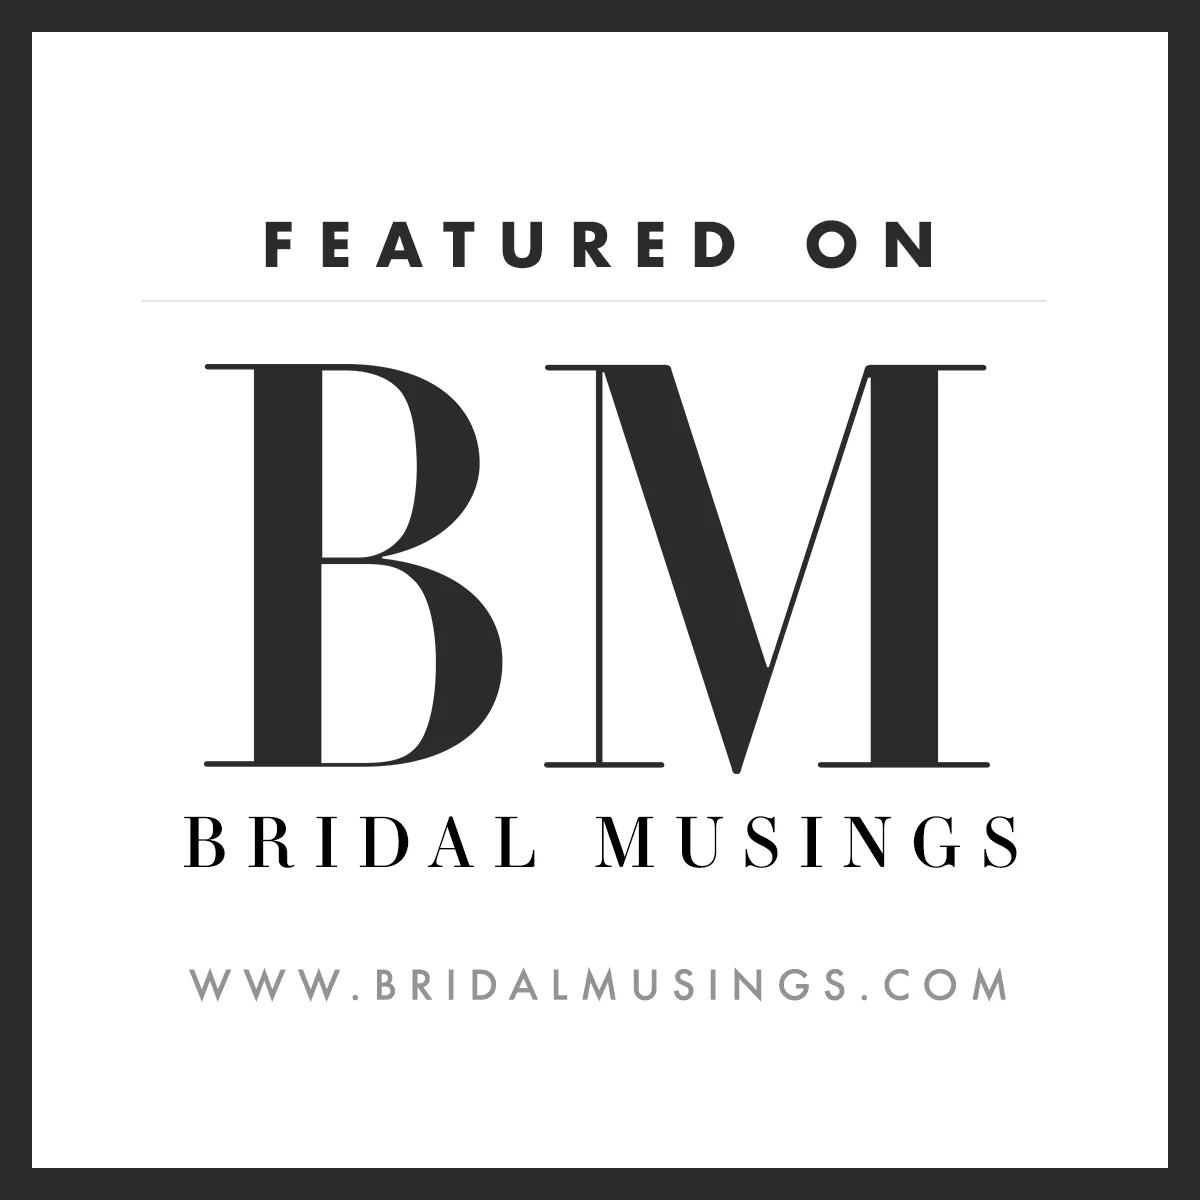 featured-on-bridal-musings-badge.jpg